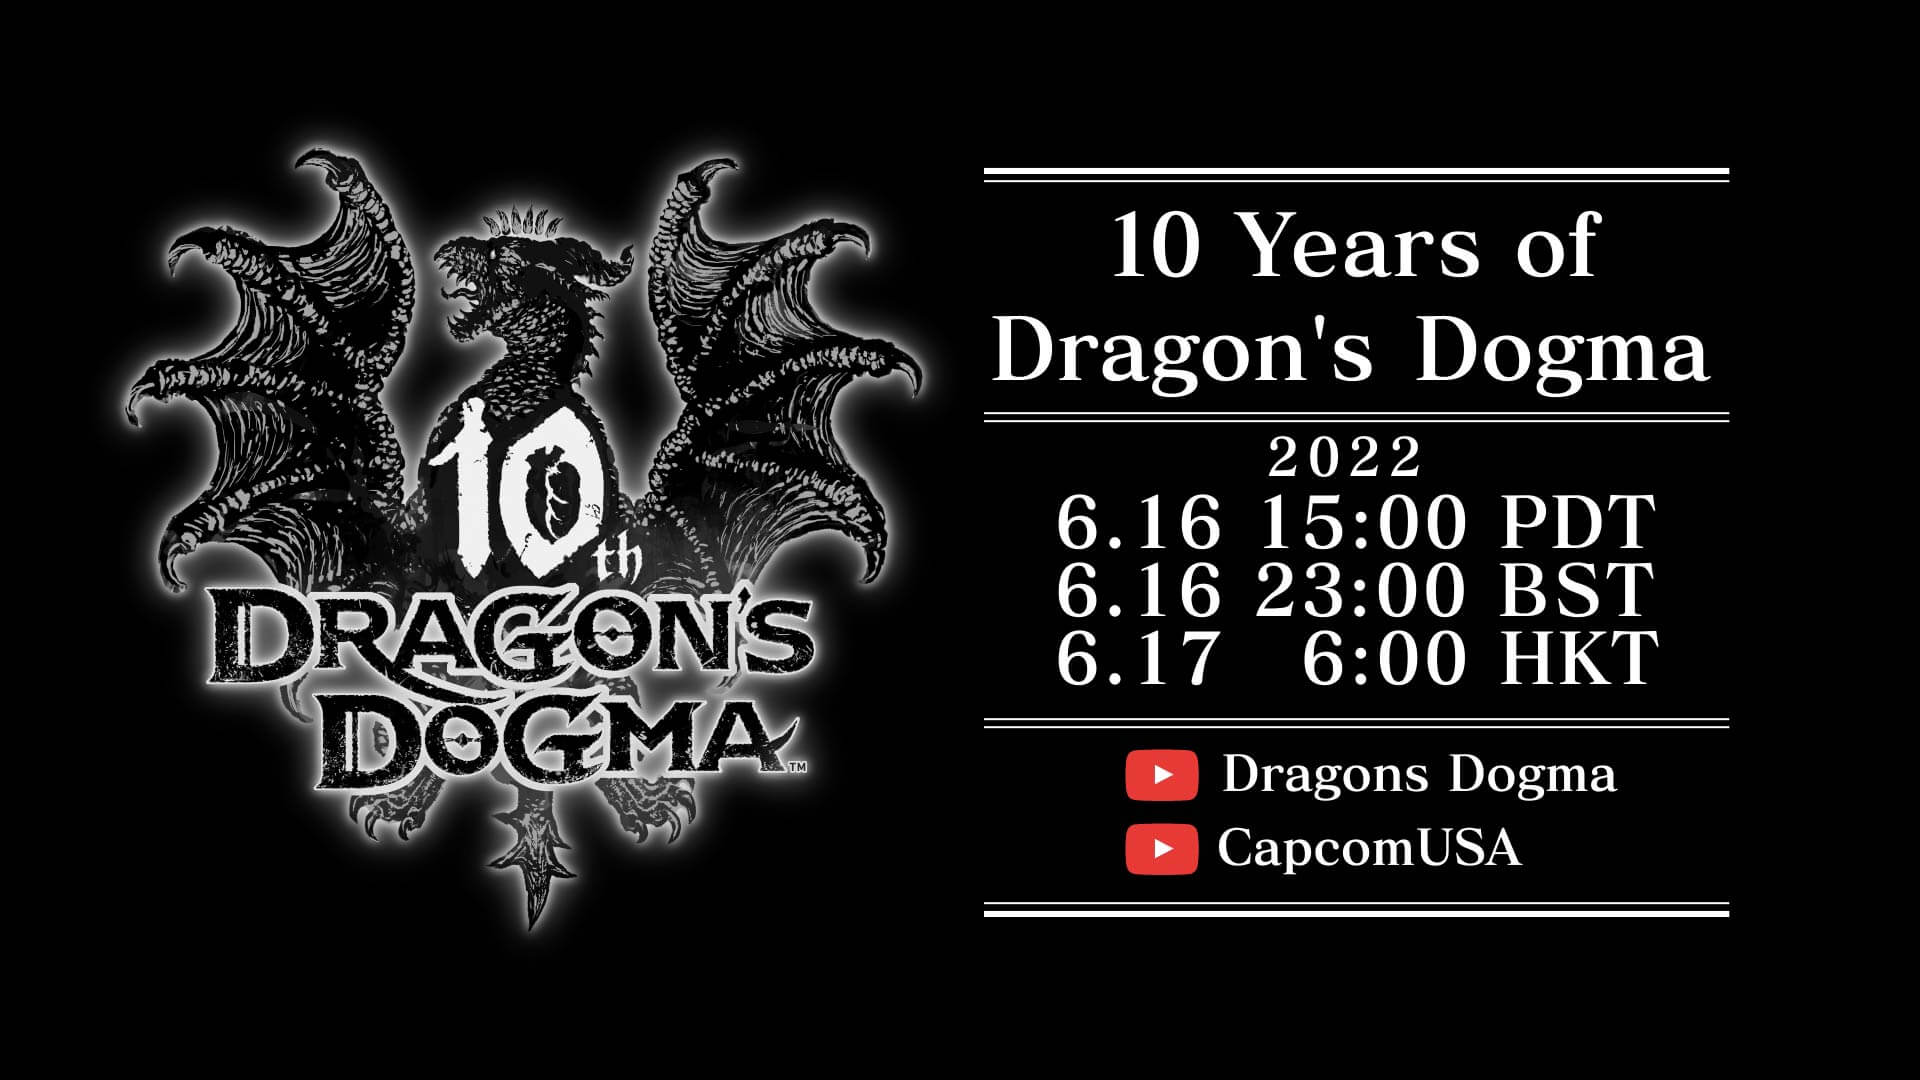 Dragon’s Dogma celebrará su 10 aniversario con un evento este 16 de junio